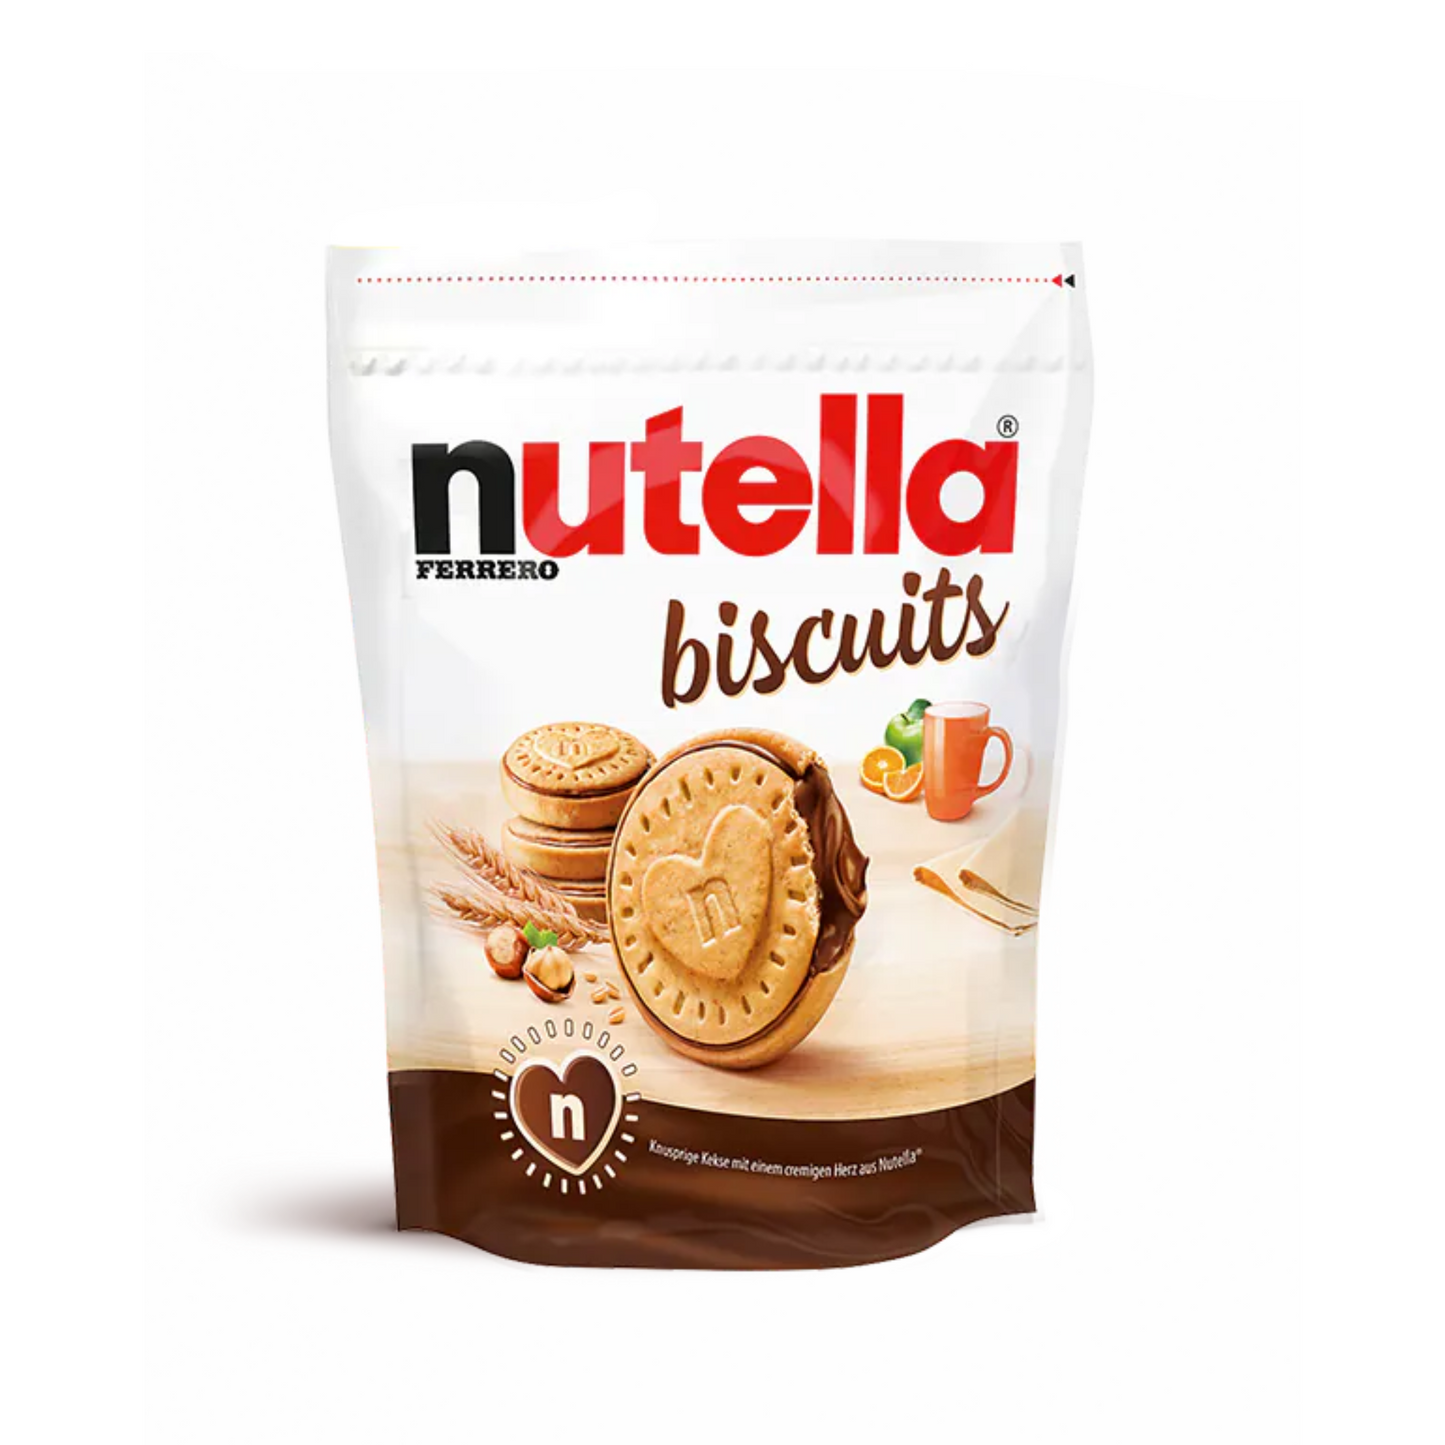 NUTELLA Biscuits 304g